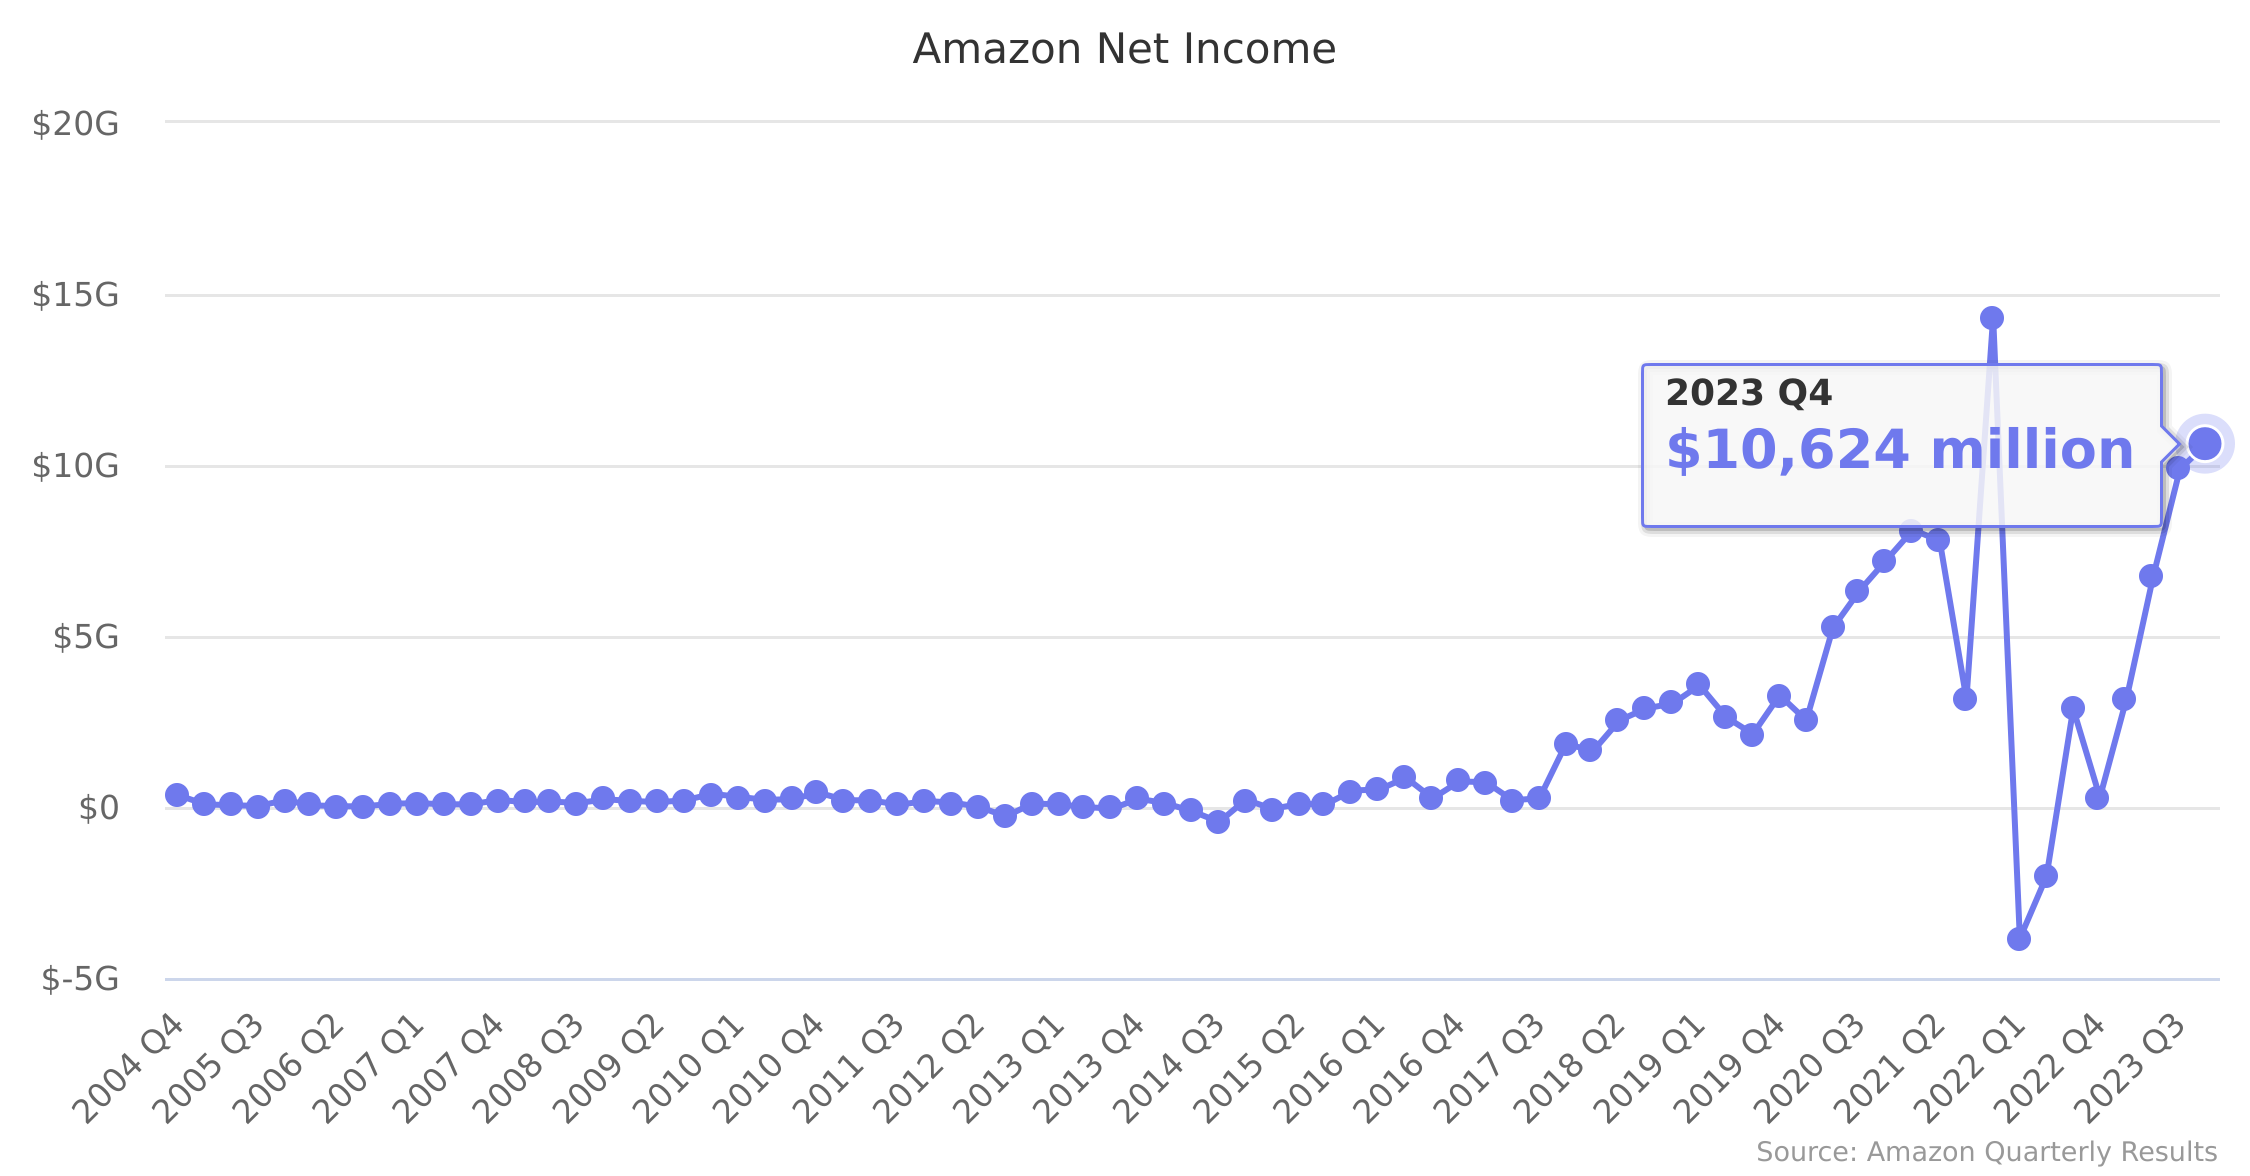 Amazon Net Income